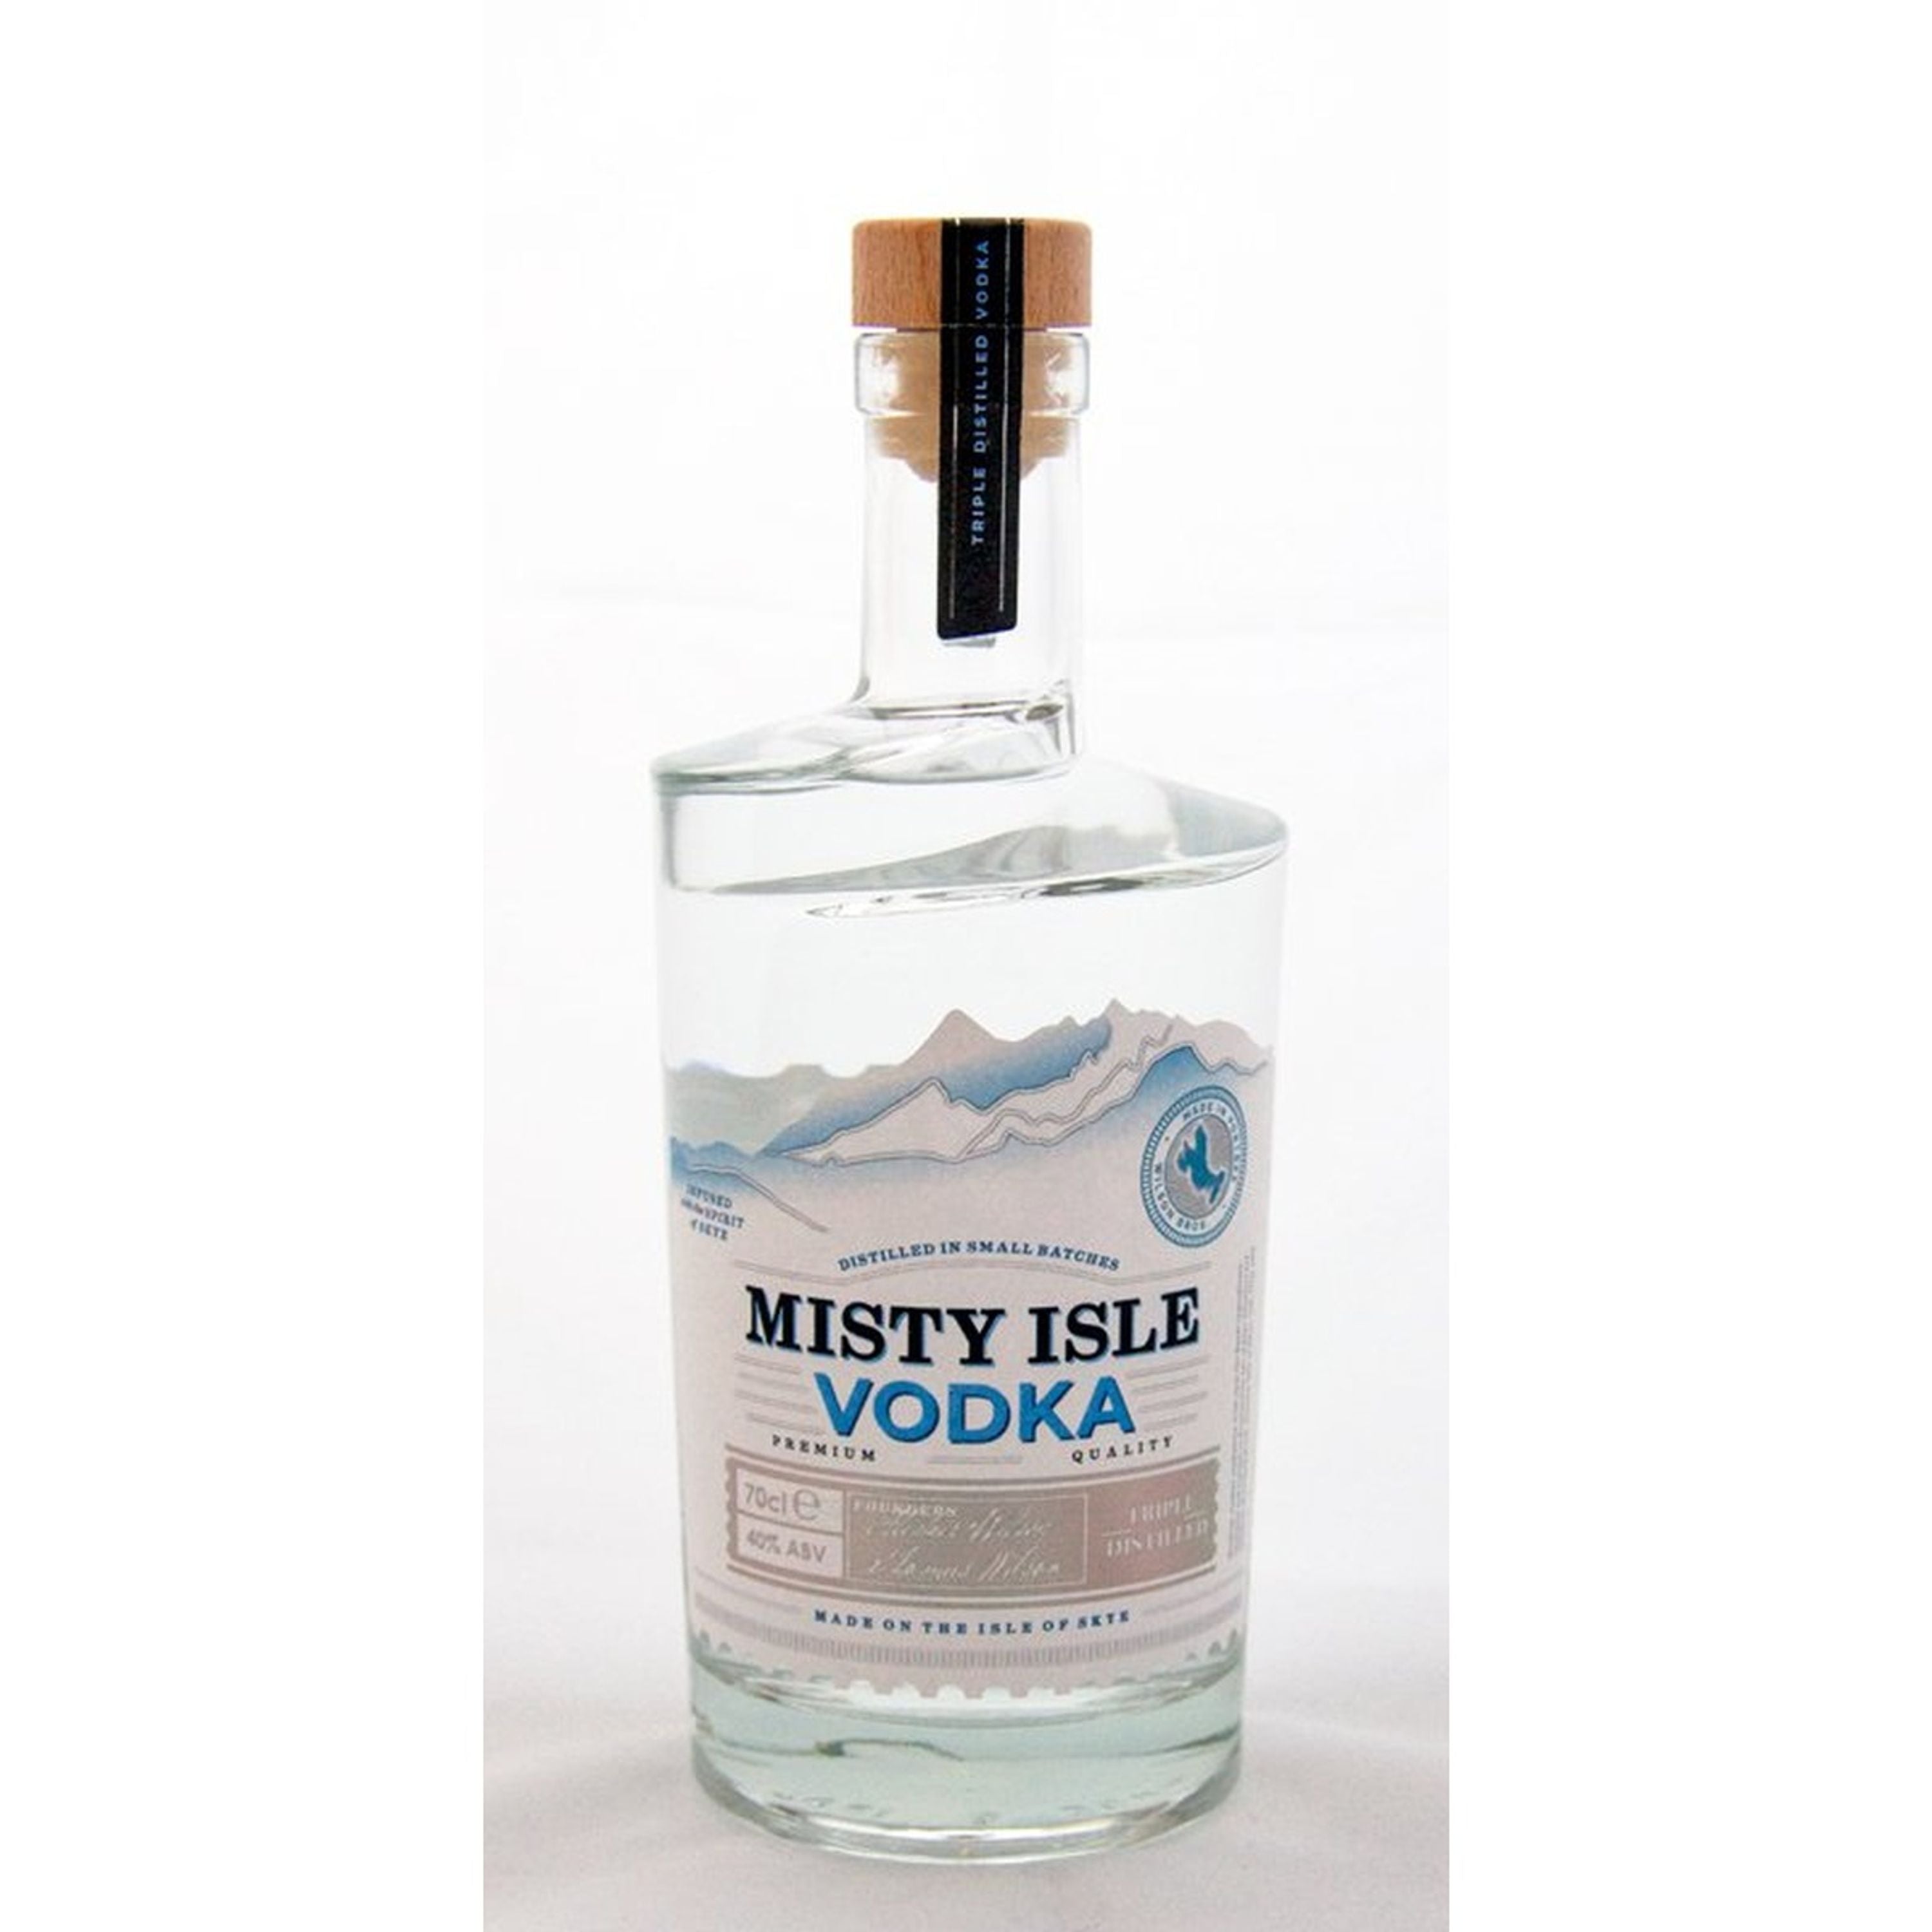 Misty Isle Vodka 0,7l, alk. 40 tilavuusprosenttia, vodka Scotland